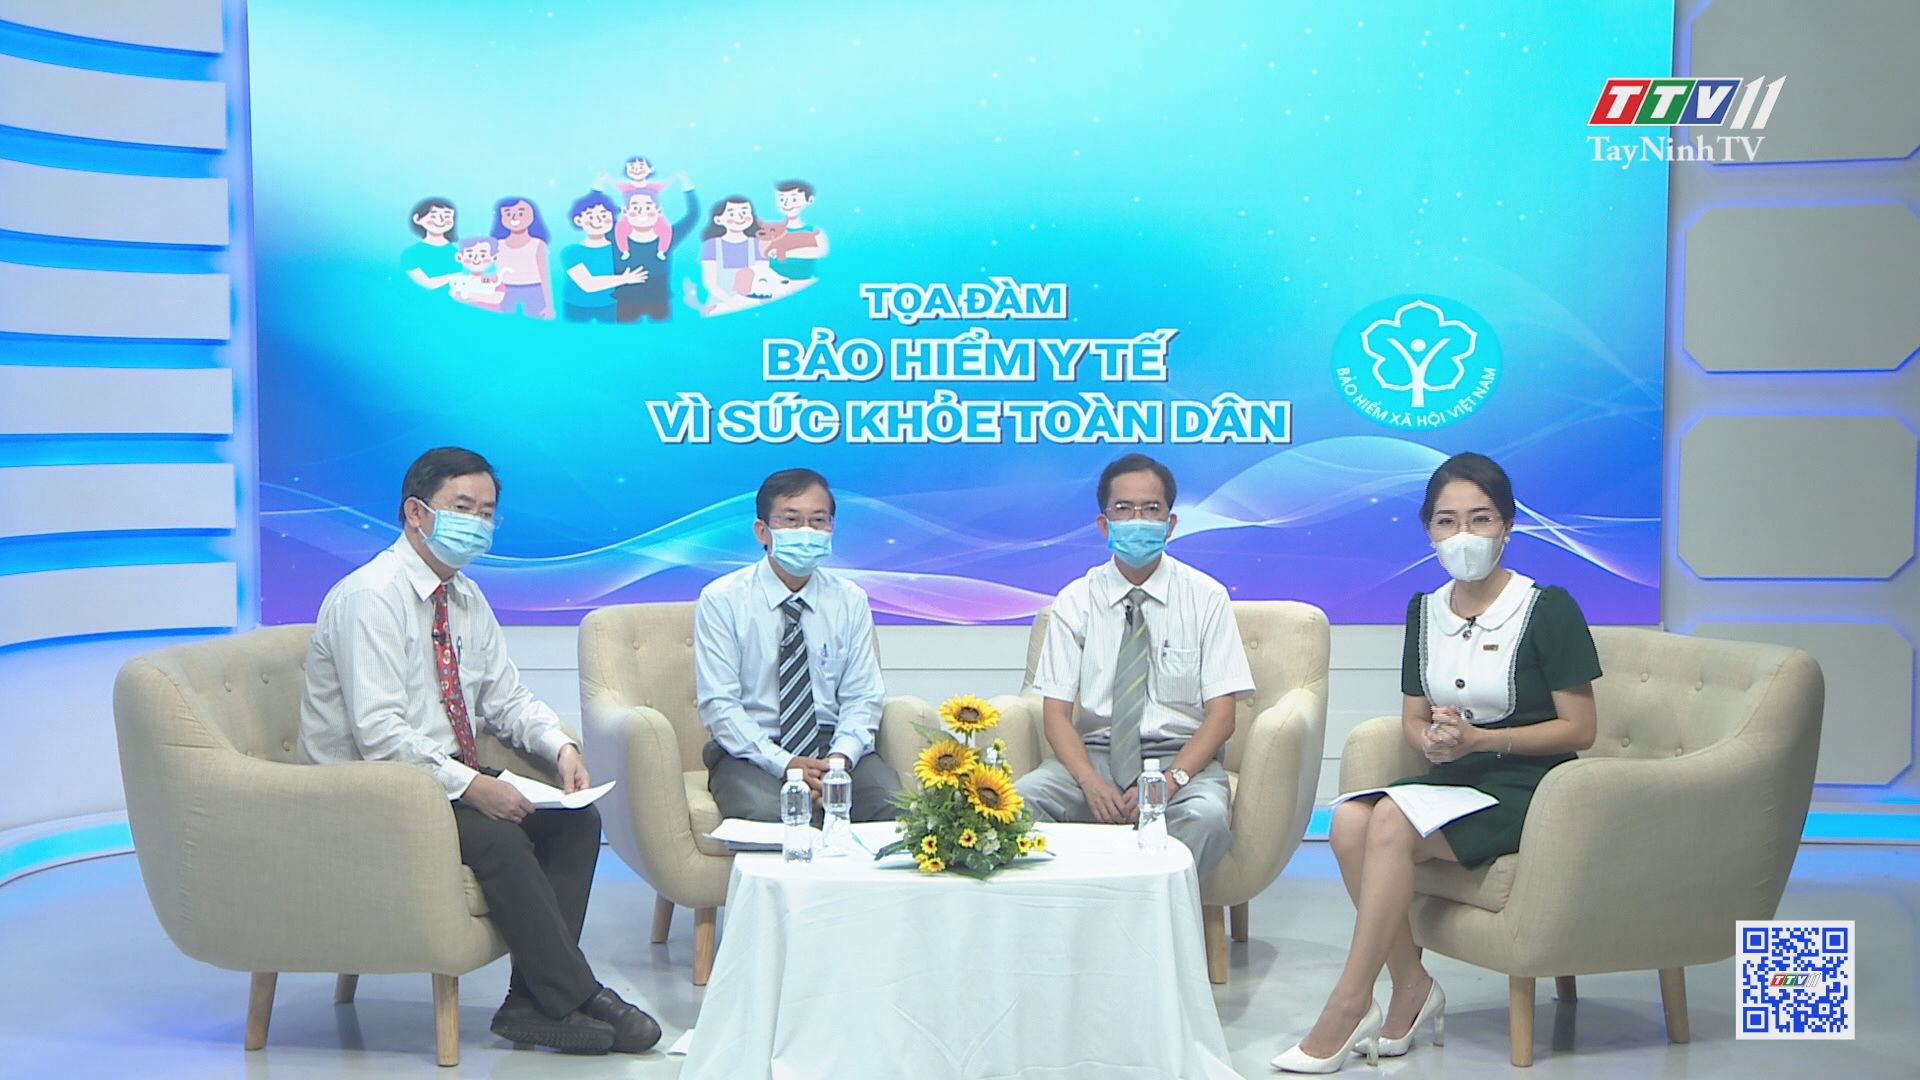 Tọa đàm bảo hiểm y tế vì sức khỏe toàn dân | BẢN HIỂM Y TẾ | TayNinhTV